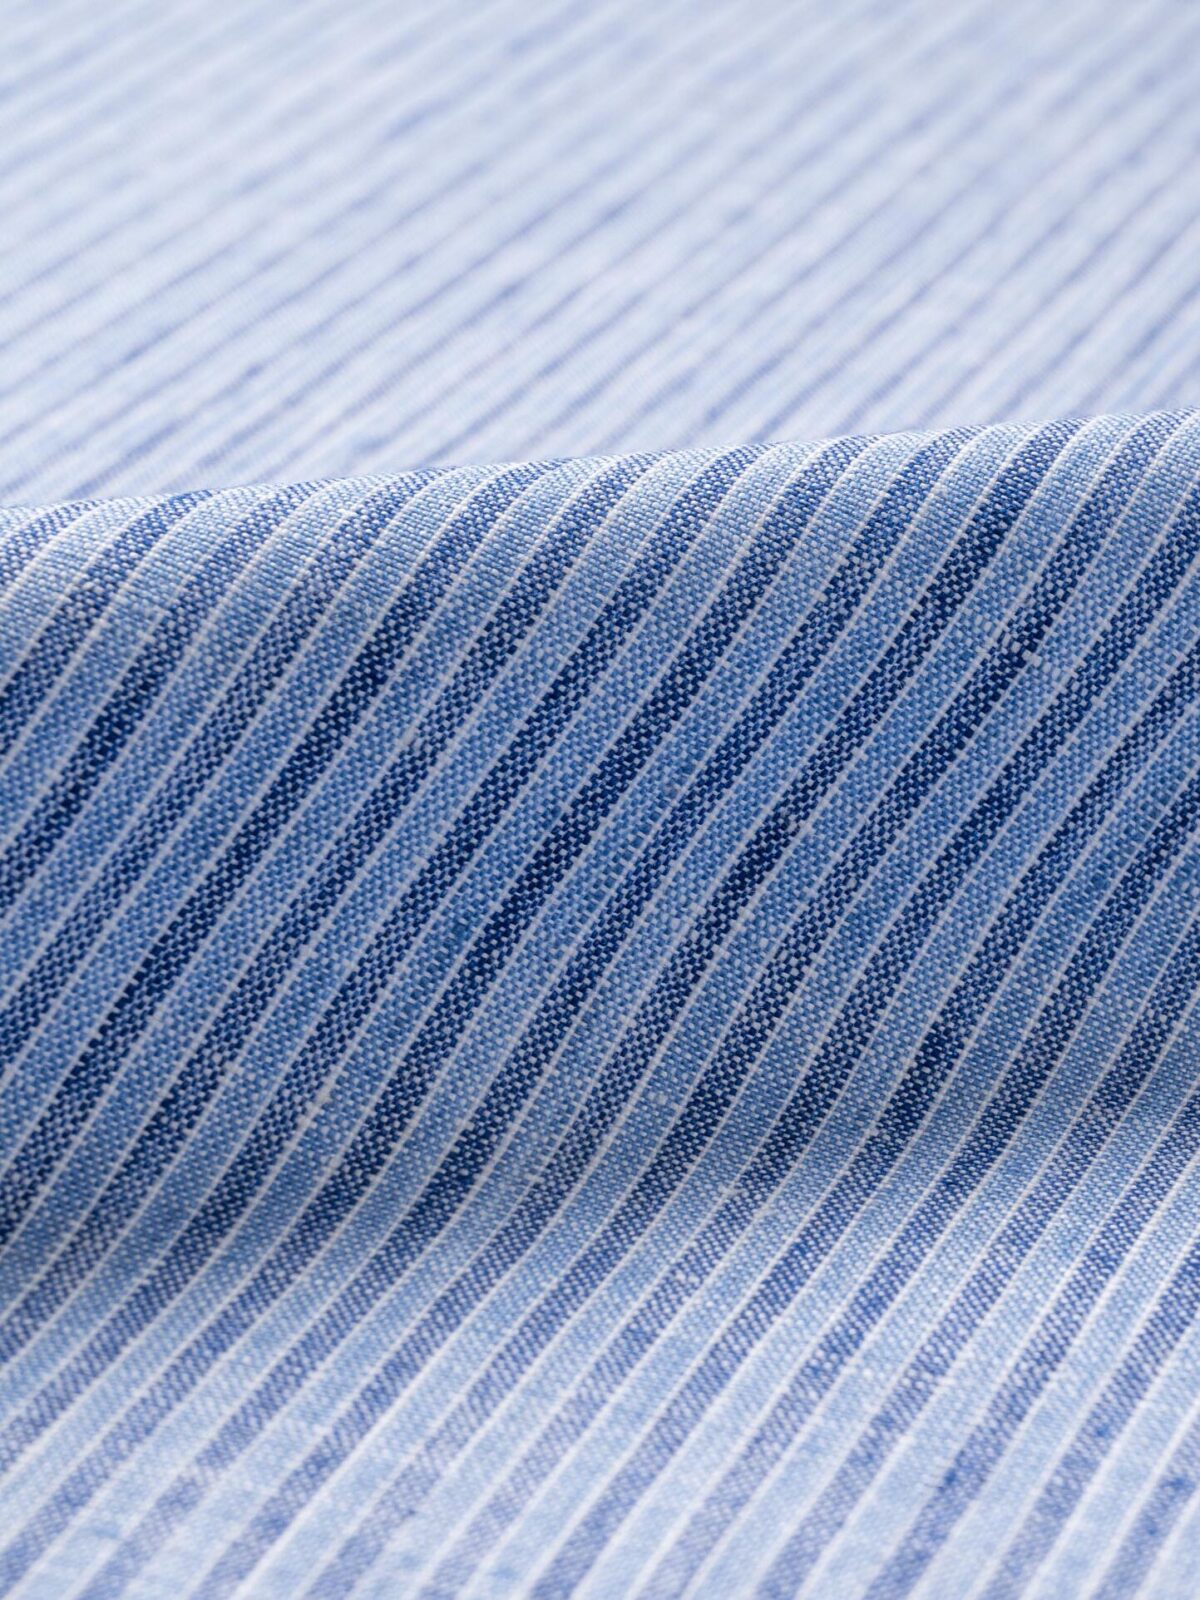 Positano Blue Small Stripe Italian Linen Shirts by Proper Cloth